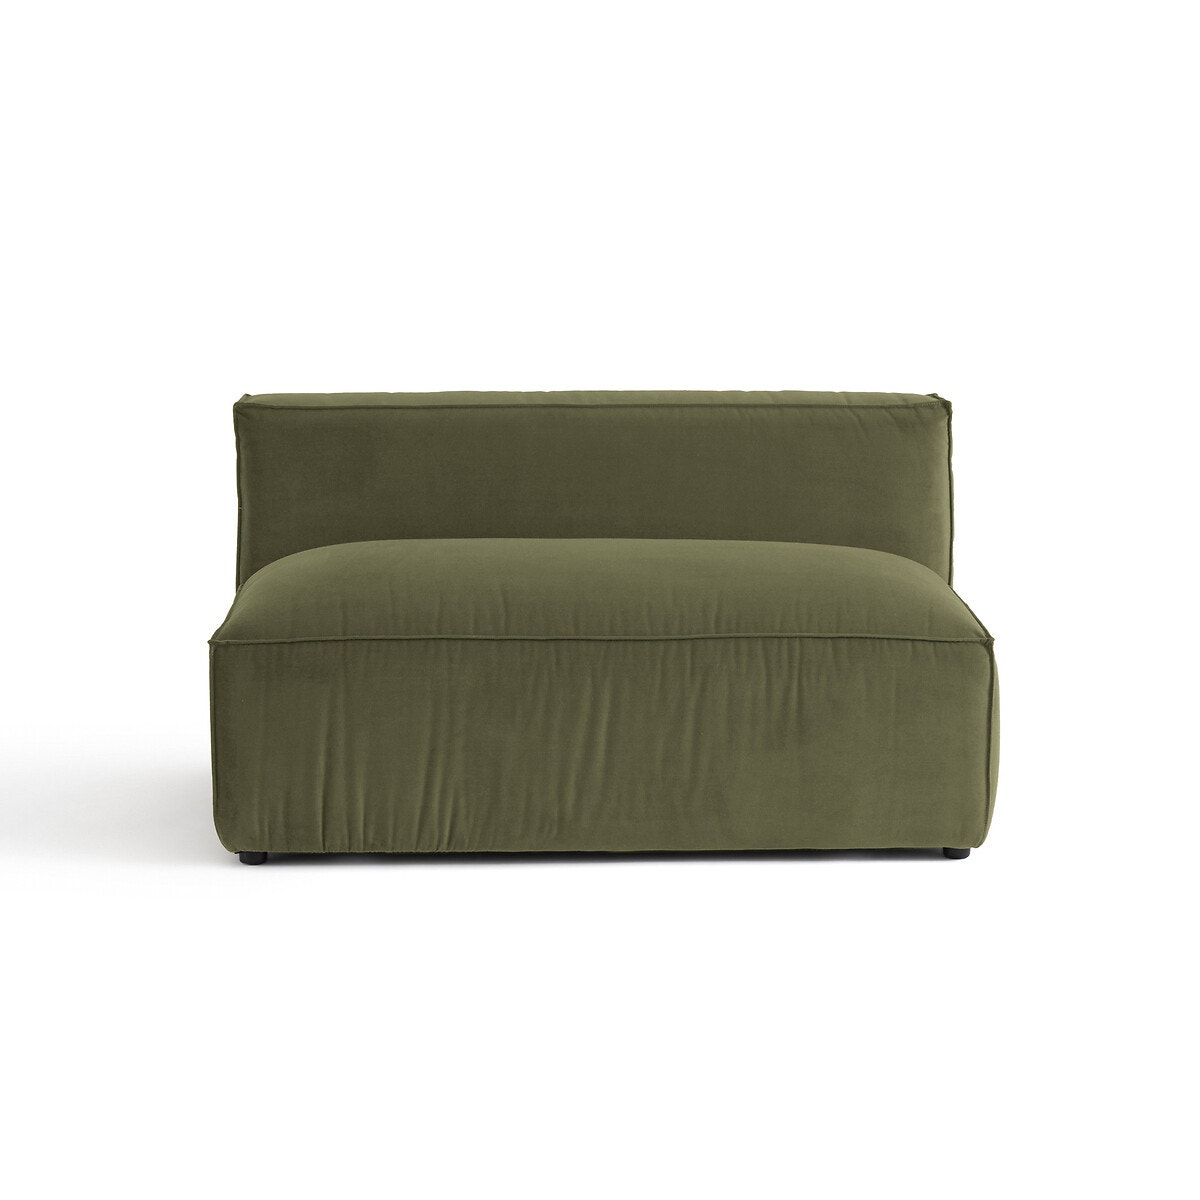 Διθέσιος καναπές-κρεβάτι από βελούδο, Seven